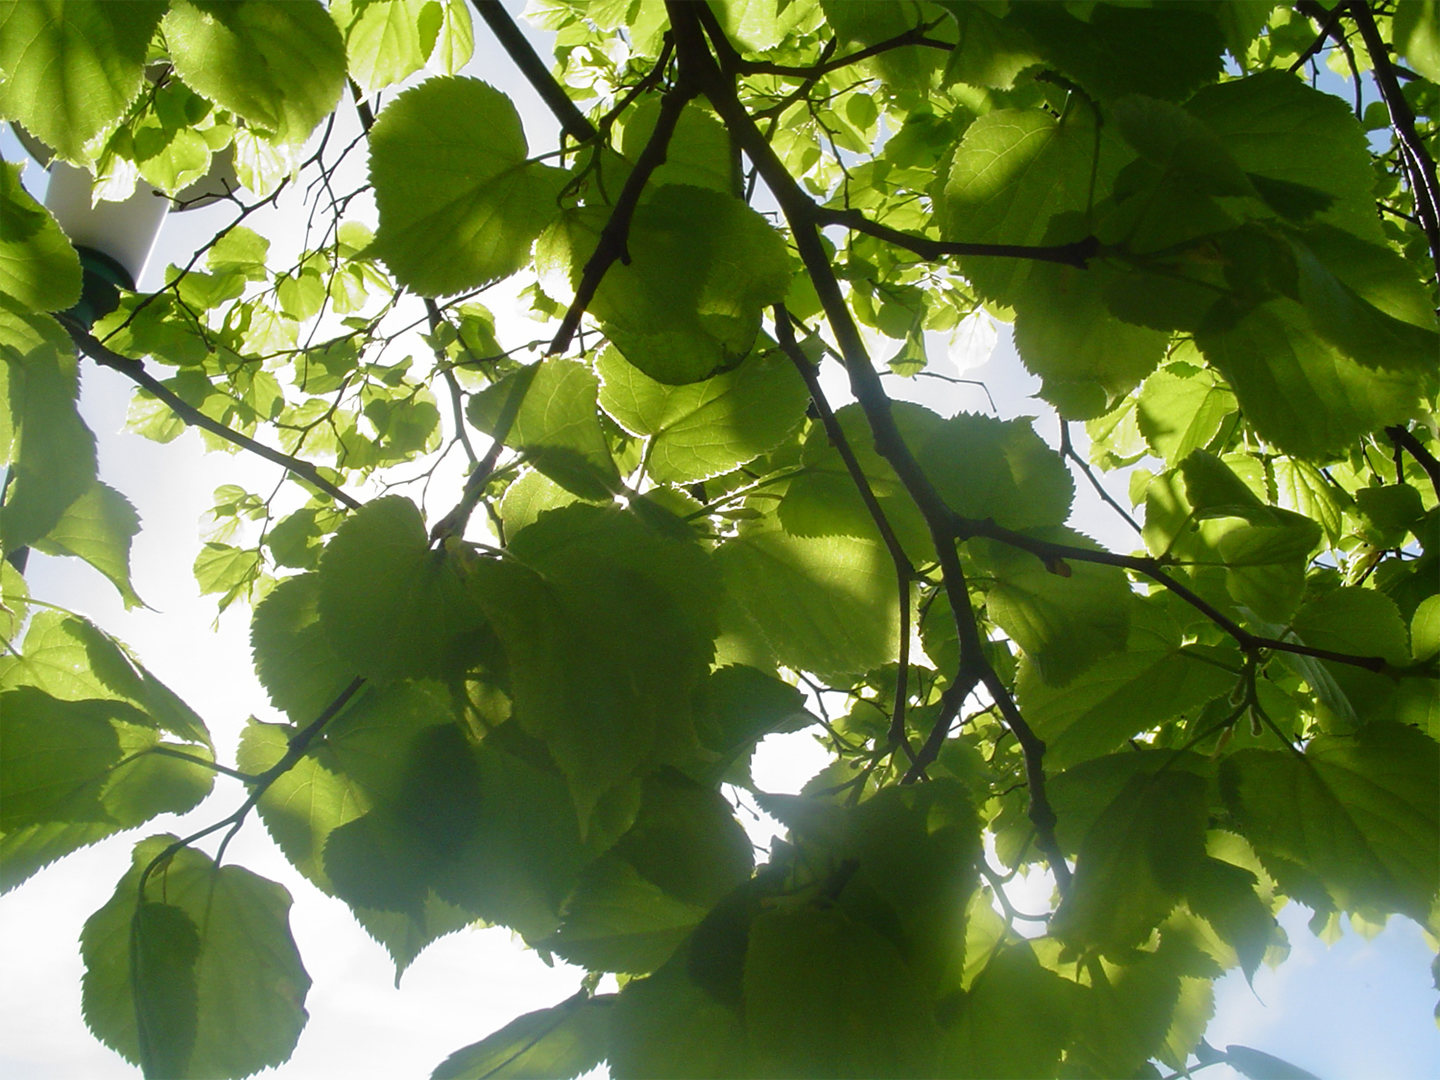 Las hojas verdes atrapan el CO2